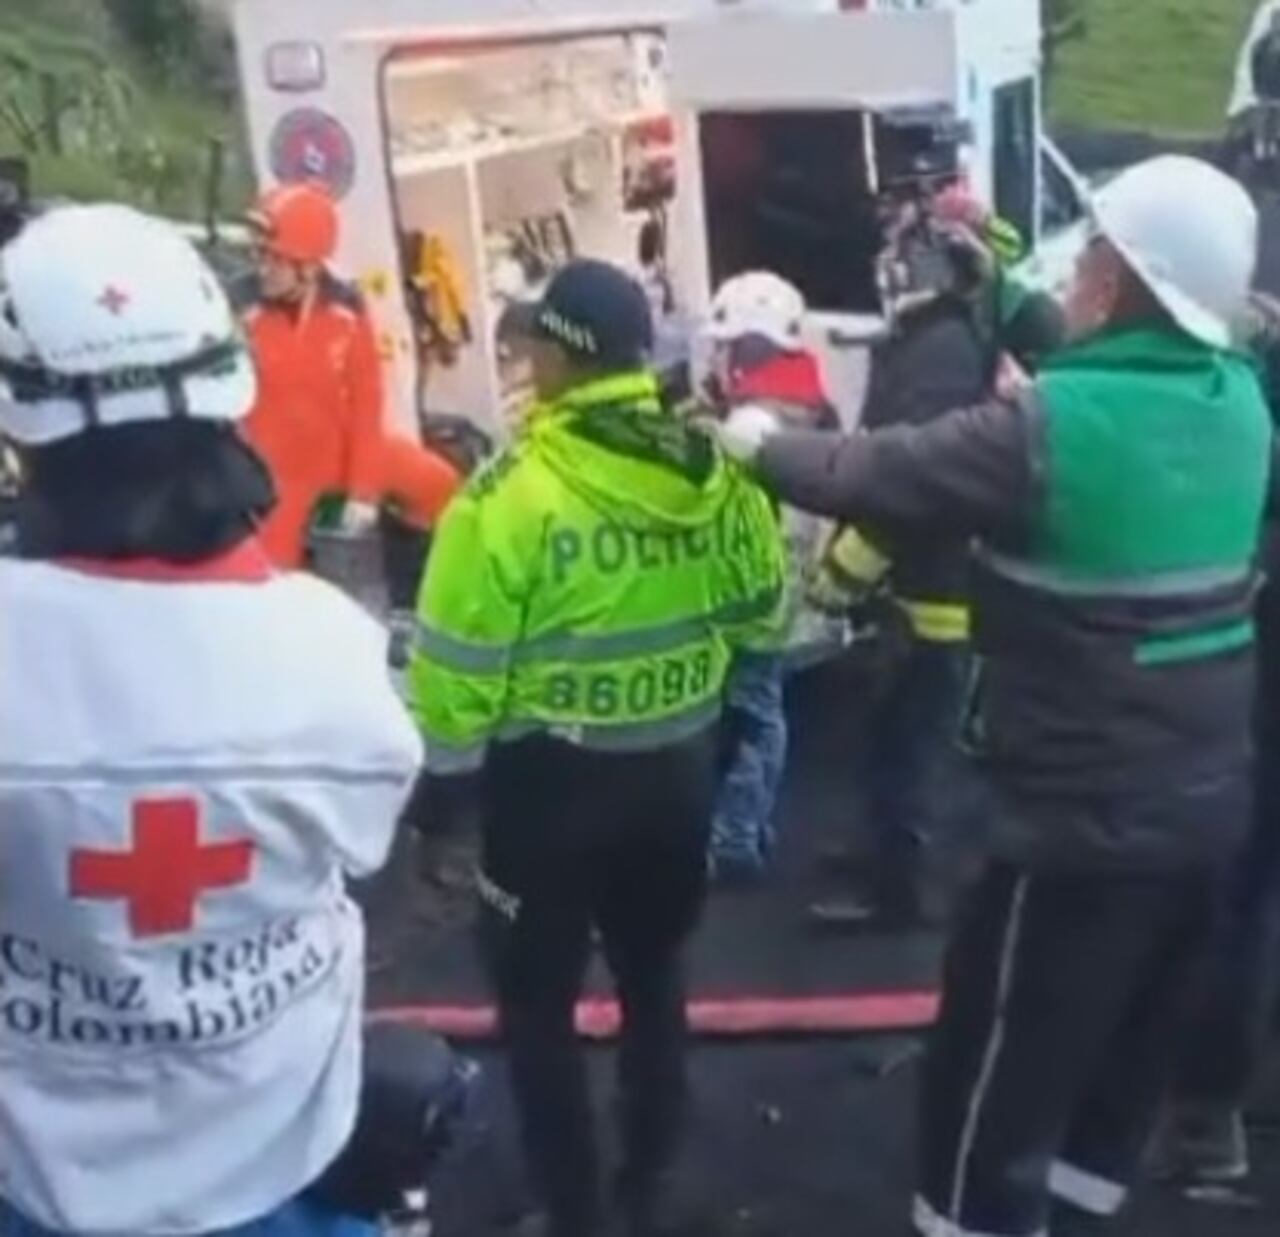 Cruz Roja y ambulancia estaban listas para atender inicialmente a los mineros